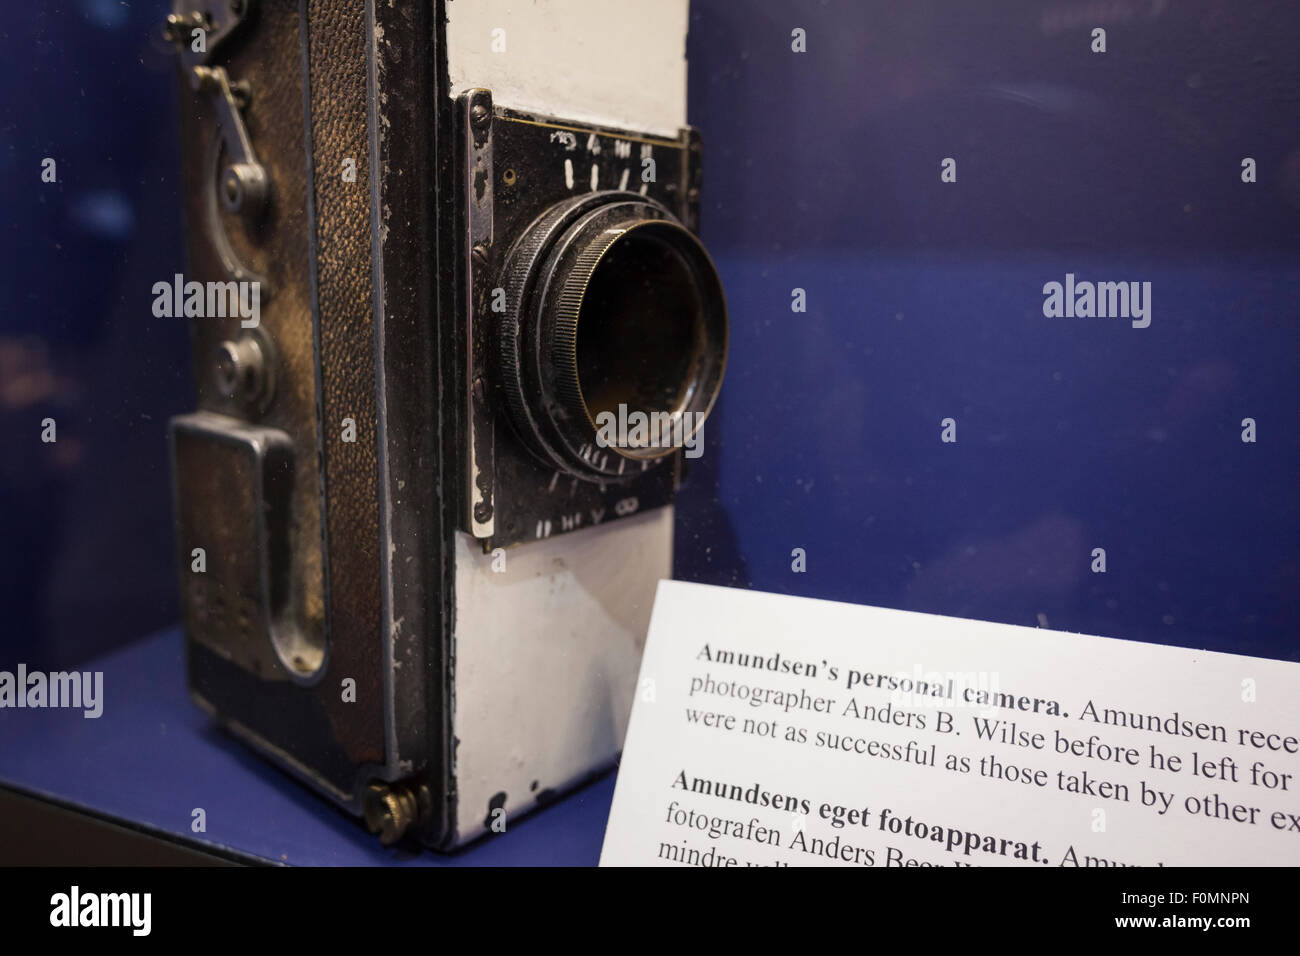 Roald Amundsen caméra personnelle affichée au Musée Fram. Oslo. La Norvège. Banque D'Images